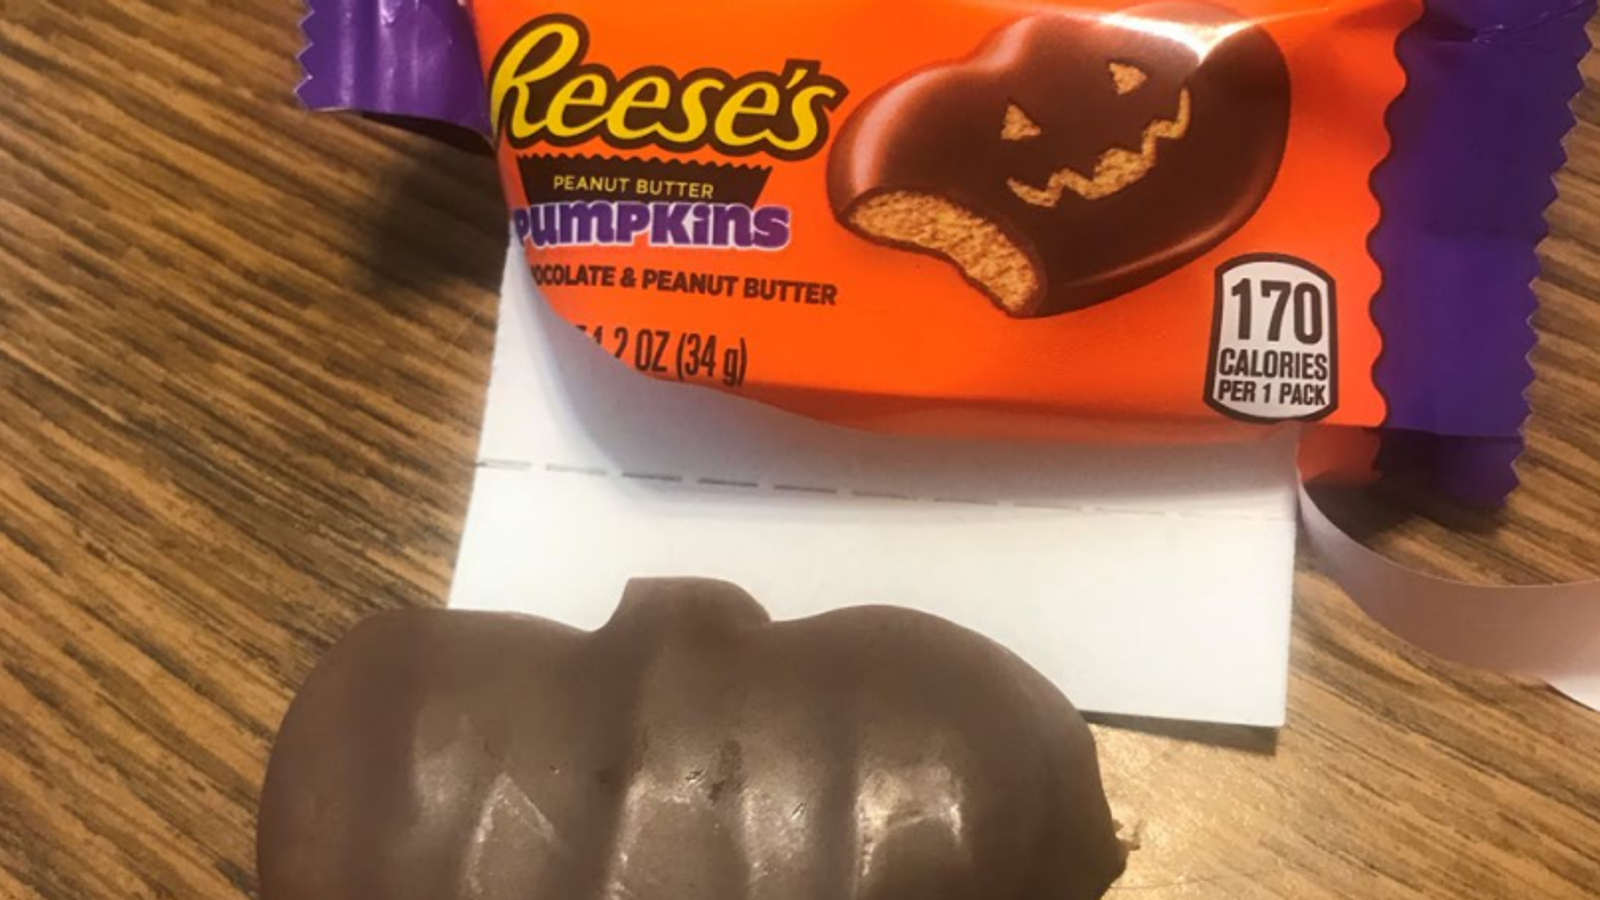 Frau aus Florida will, dass Hershey 5 Millionen Dollar für „irreführende“ Halloween-Süßigkeiten zahlt |  US-Nachrichten